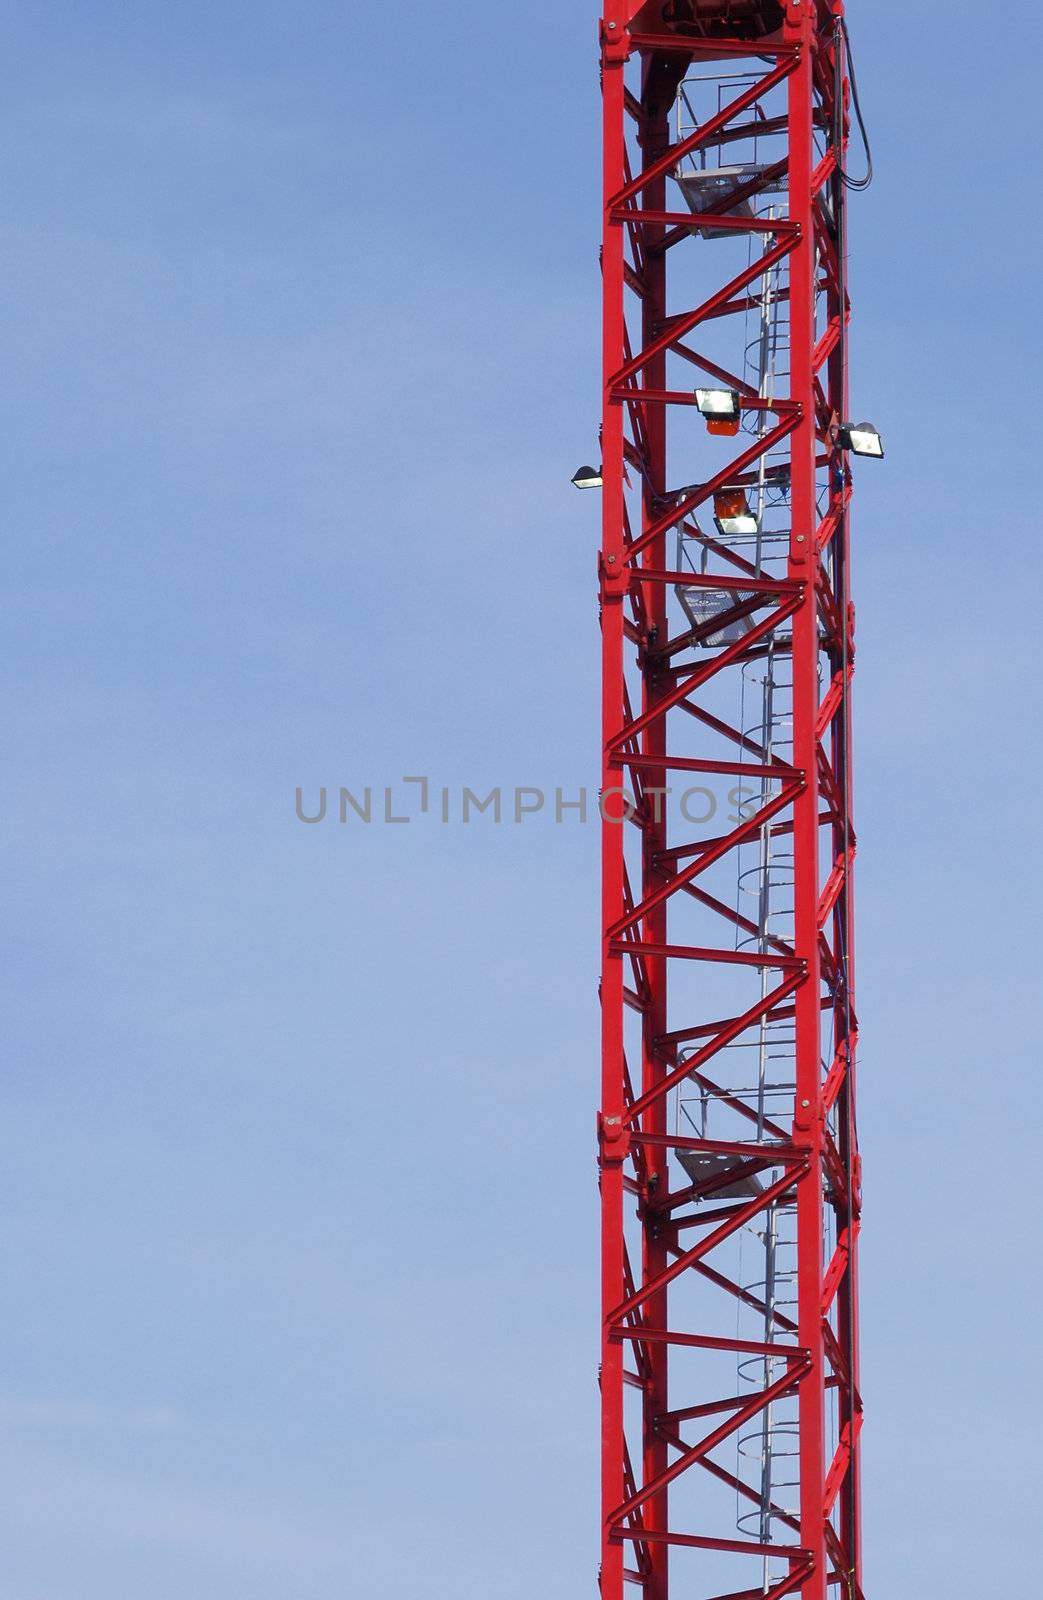 construction crane section against blue sky